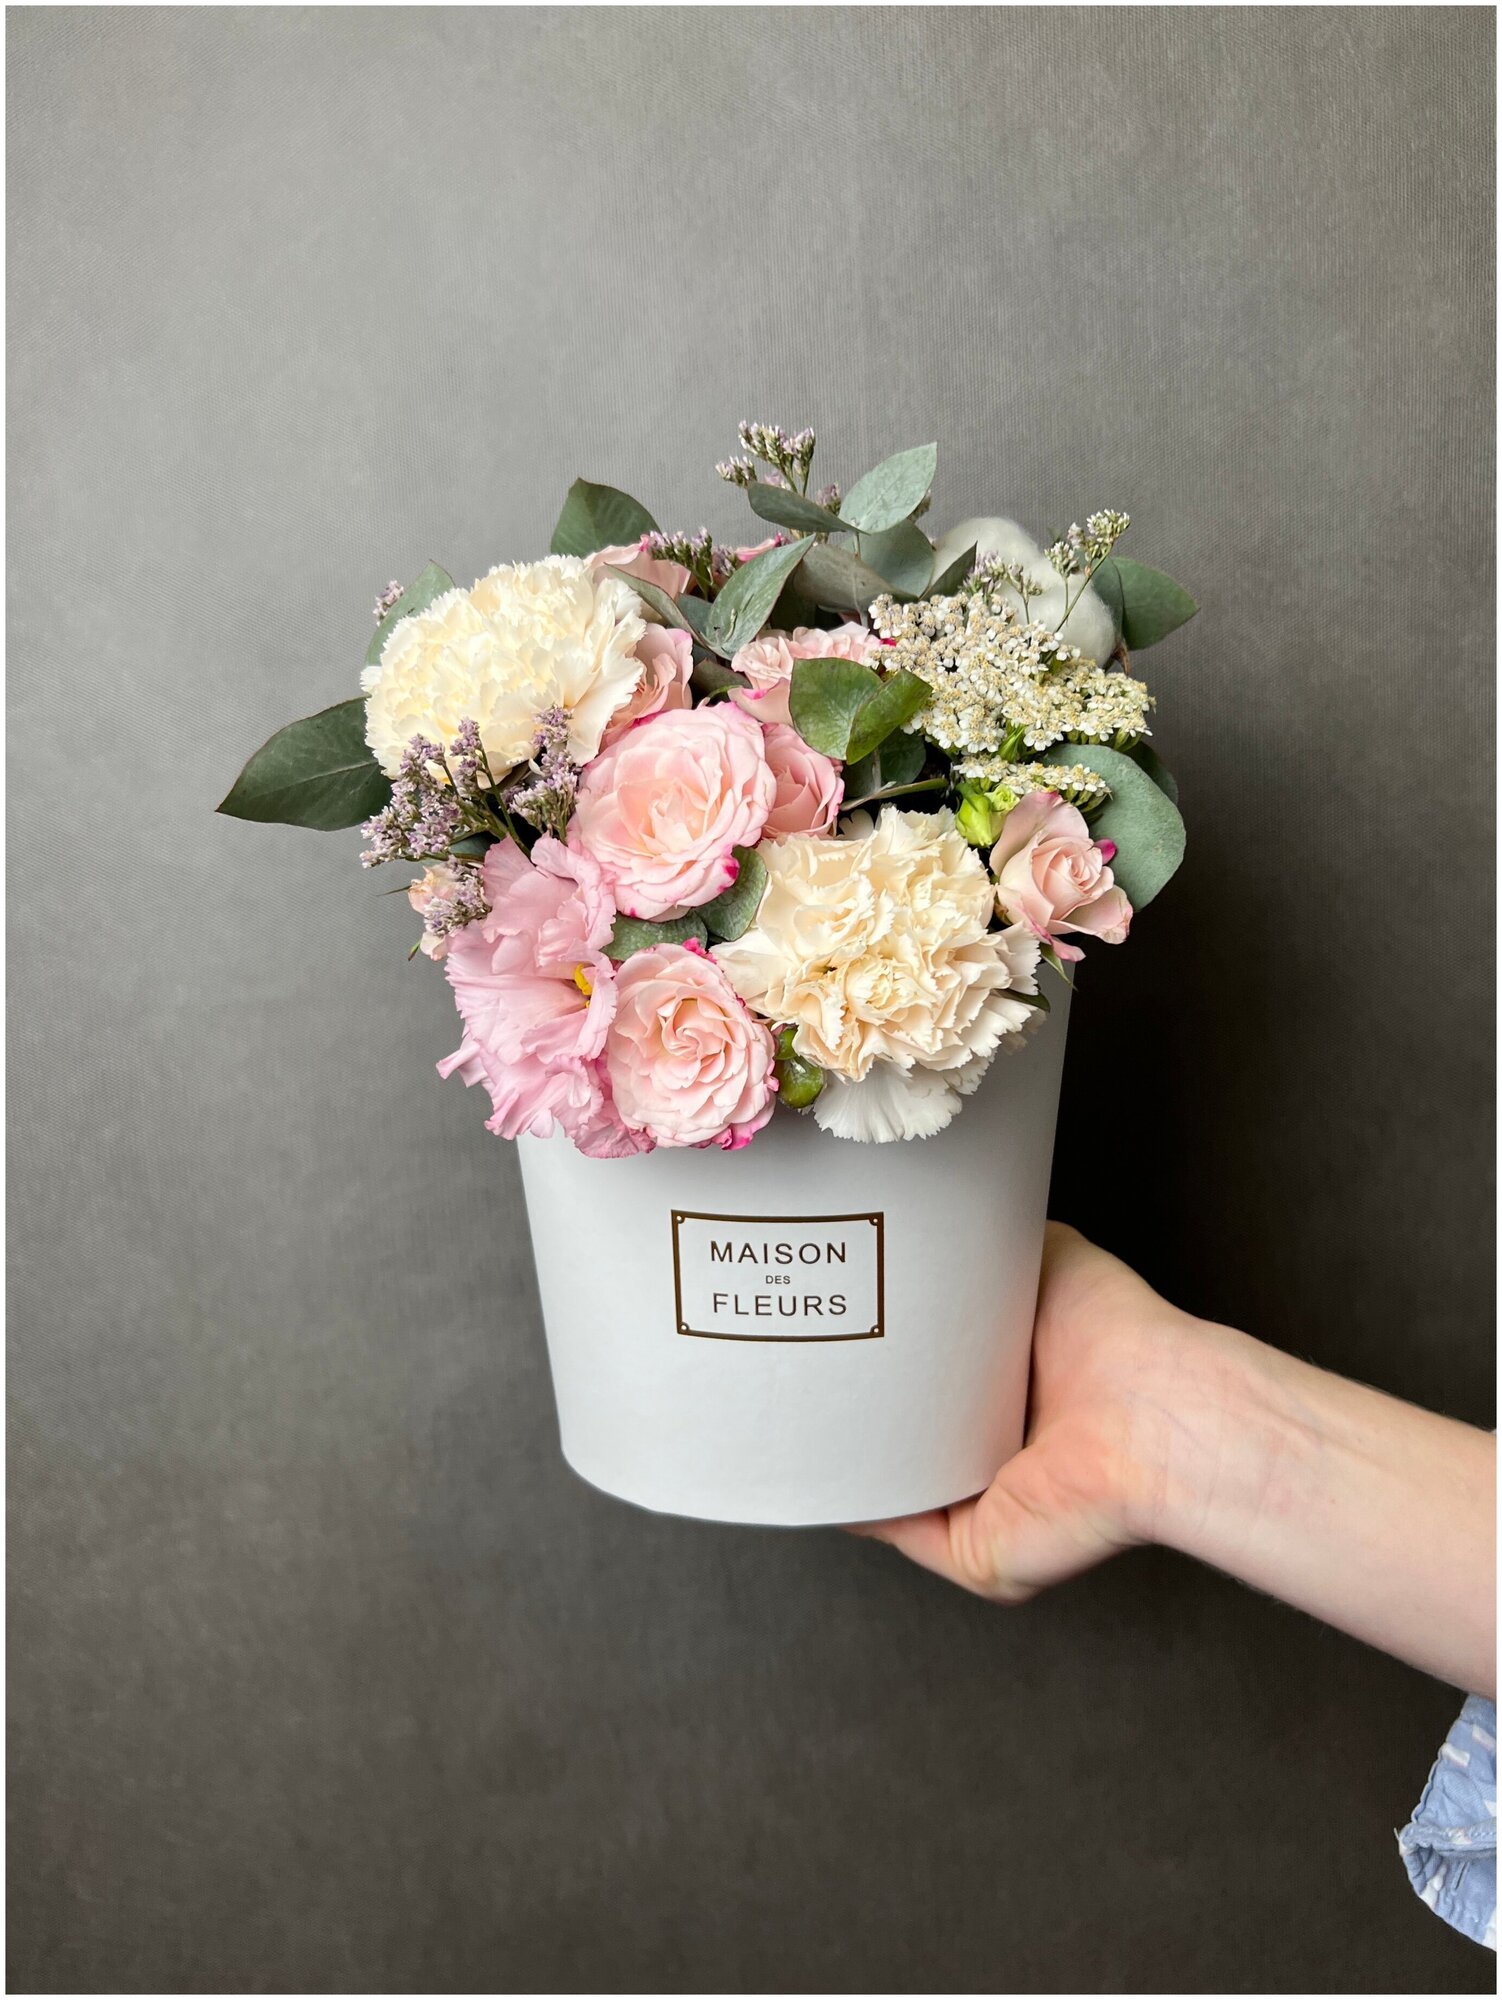 Цветы в белой коробке MAXI, с кустовой розой, диантусом и эвкалиптом